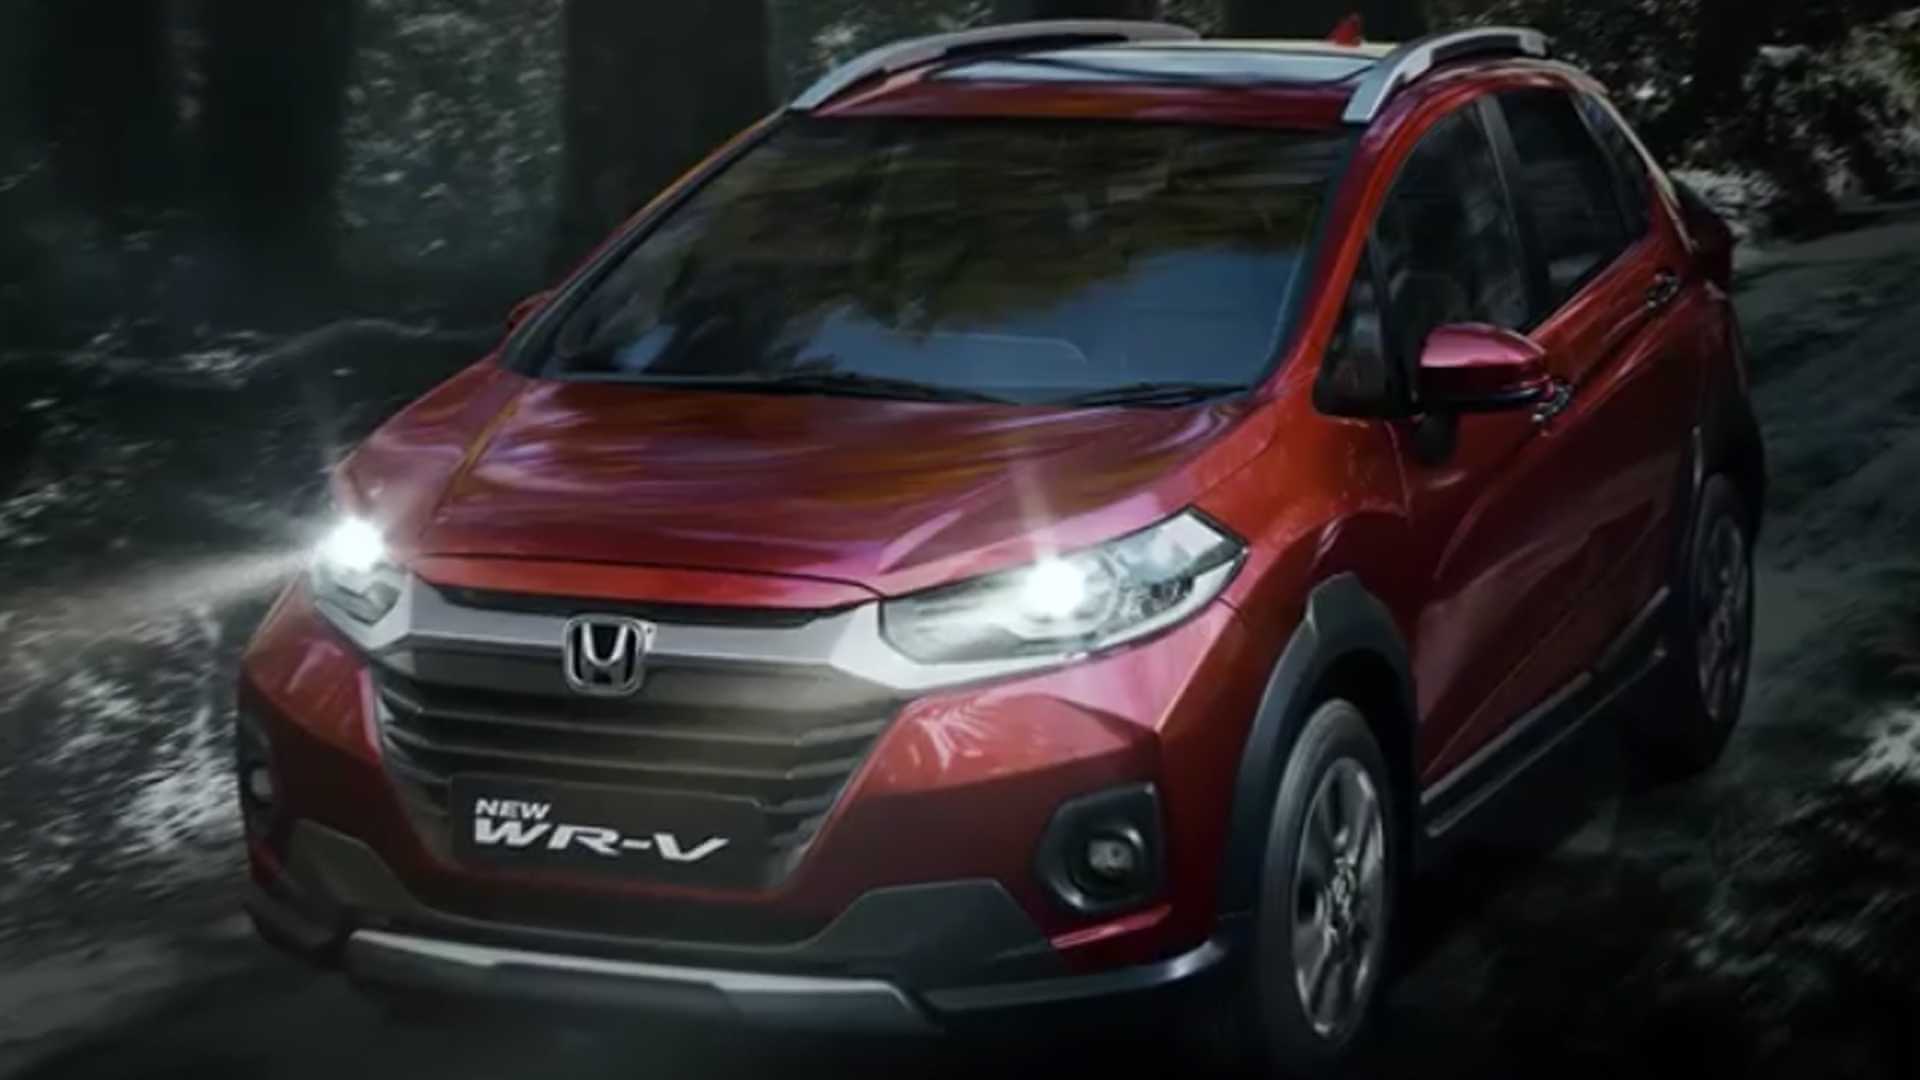 Honda Wr V 2021